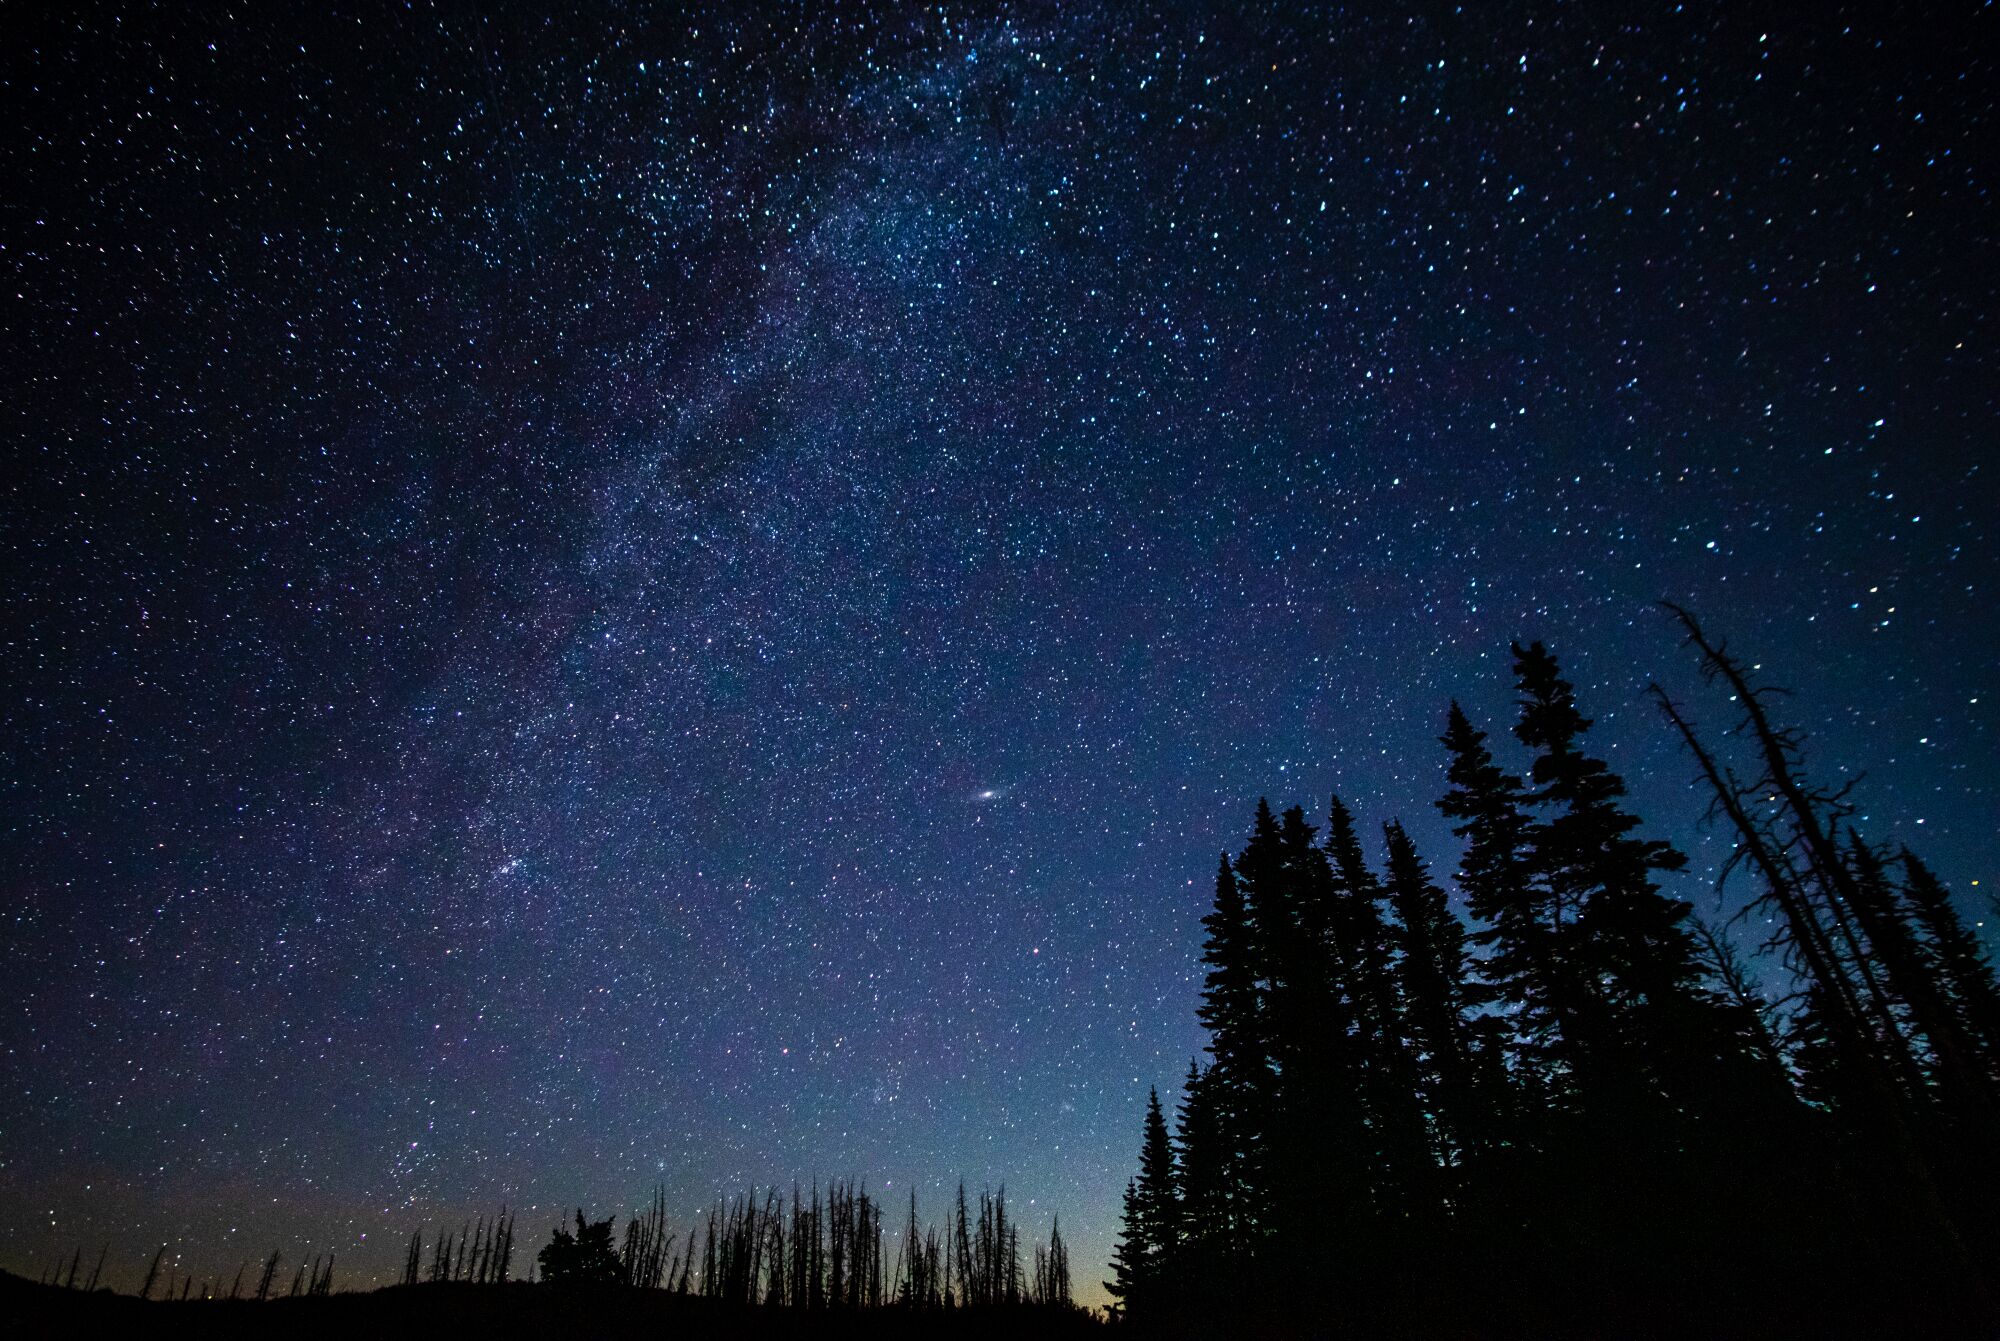 Utah'daki Cedar Breaks Ulusal Anıtı'ndaki sedir ağaçlarının silüetlerinin arkasındaki kuzey yıldızı manzarası.